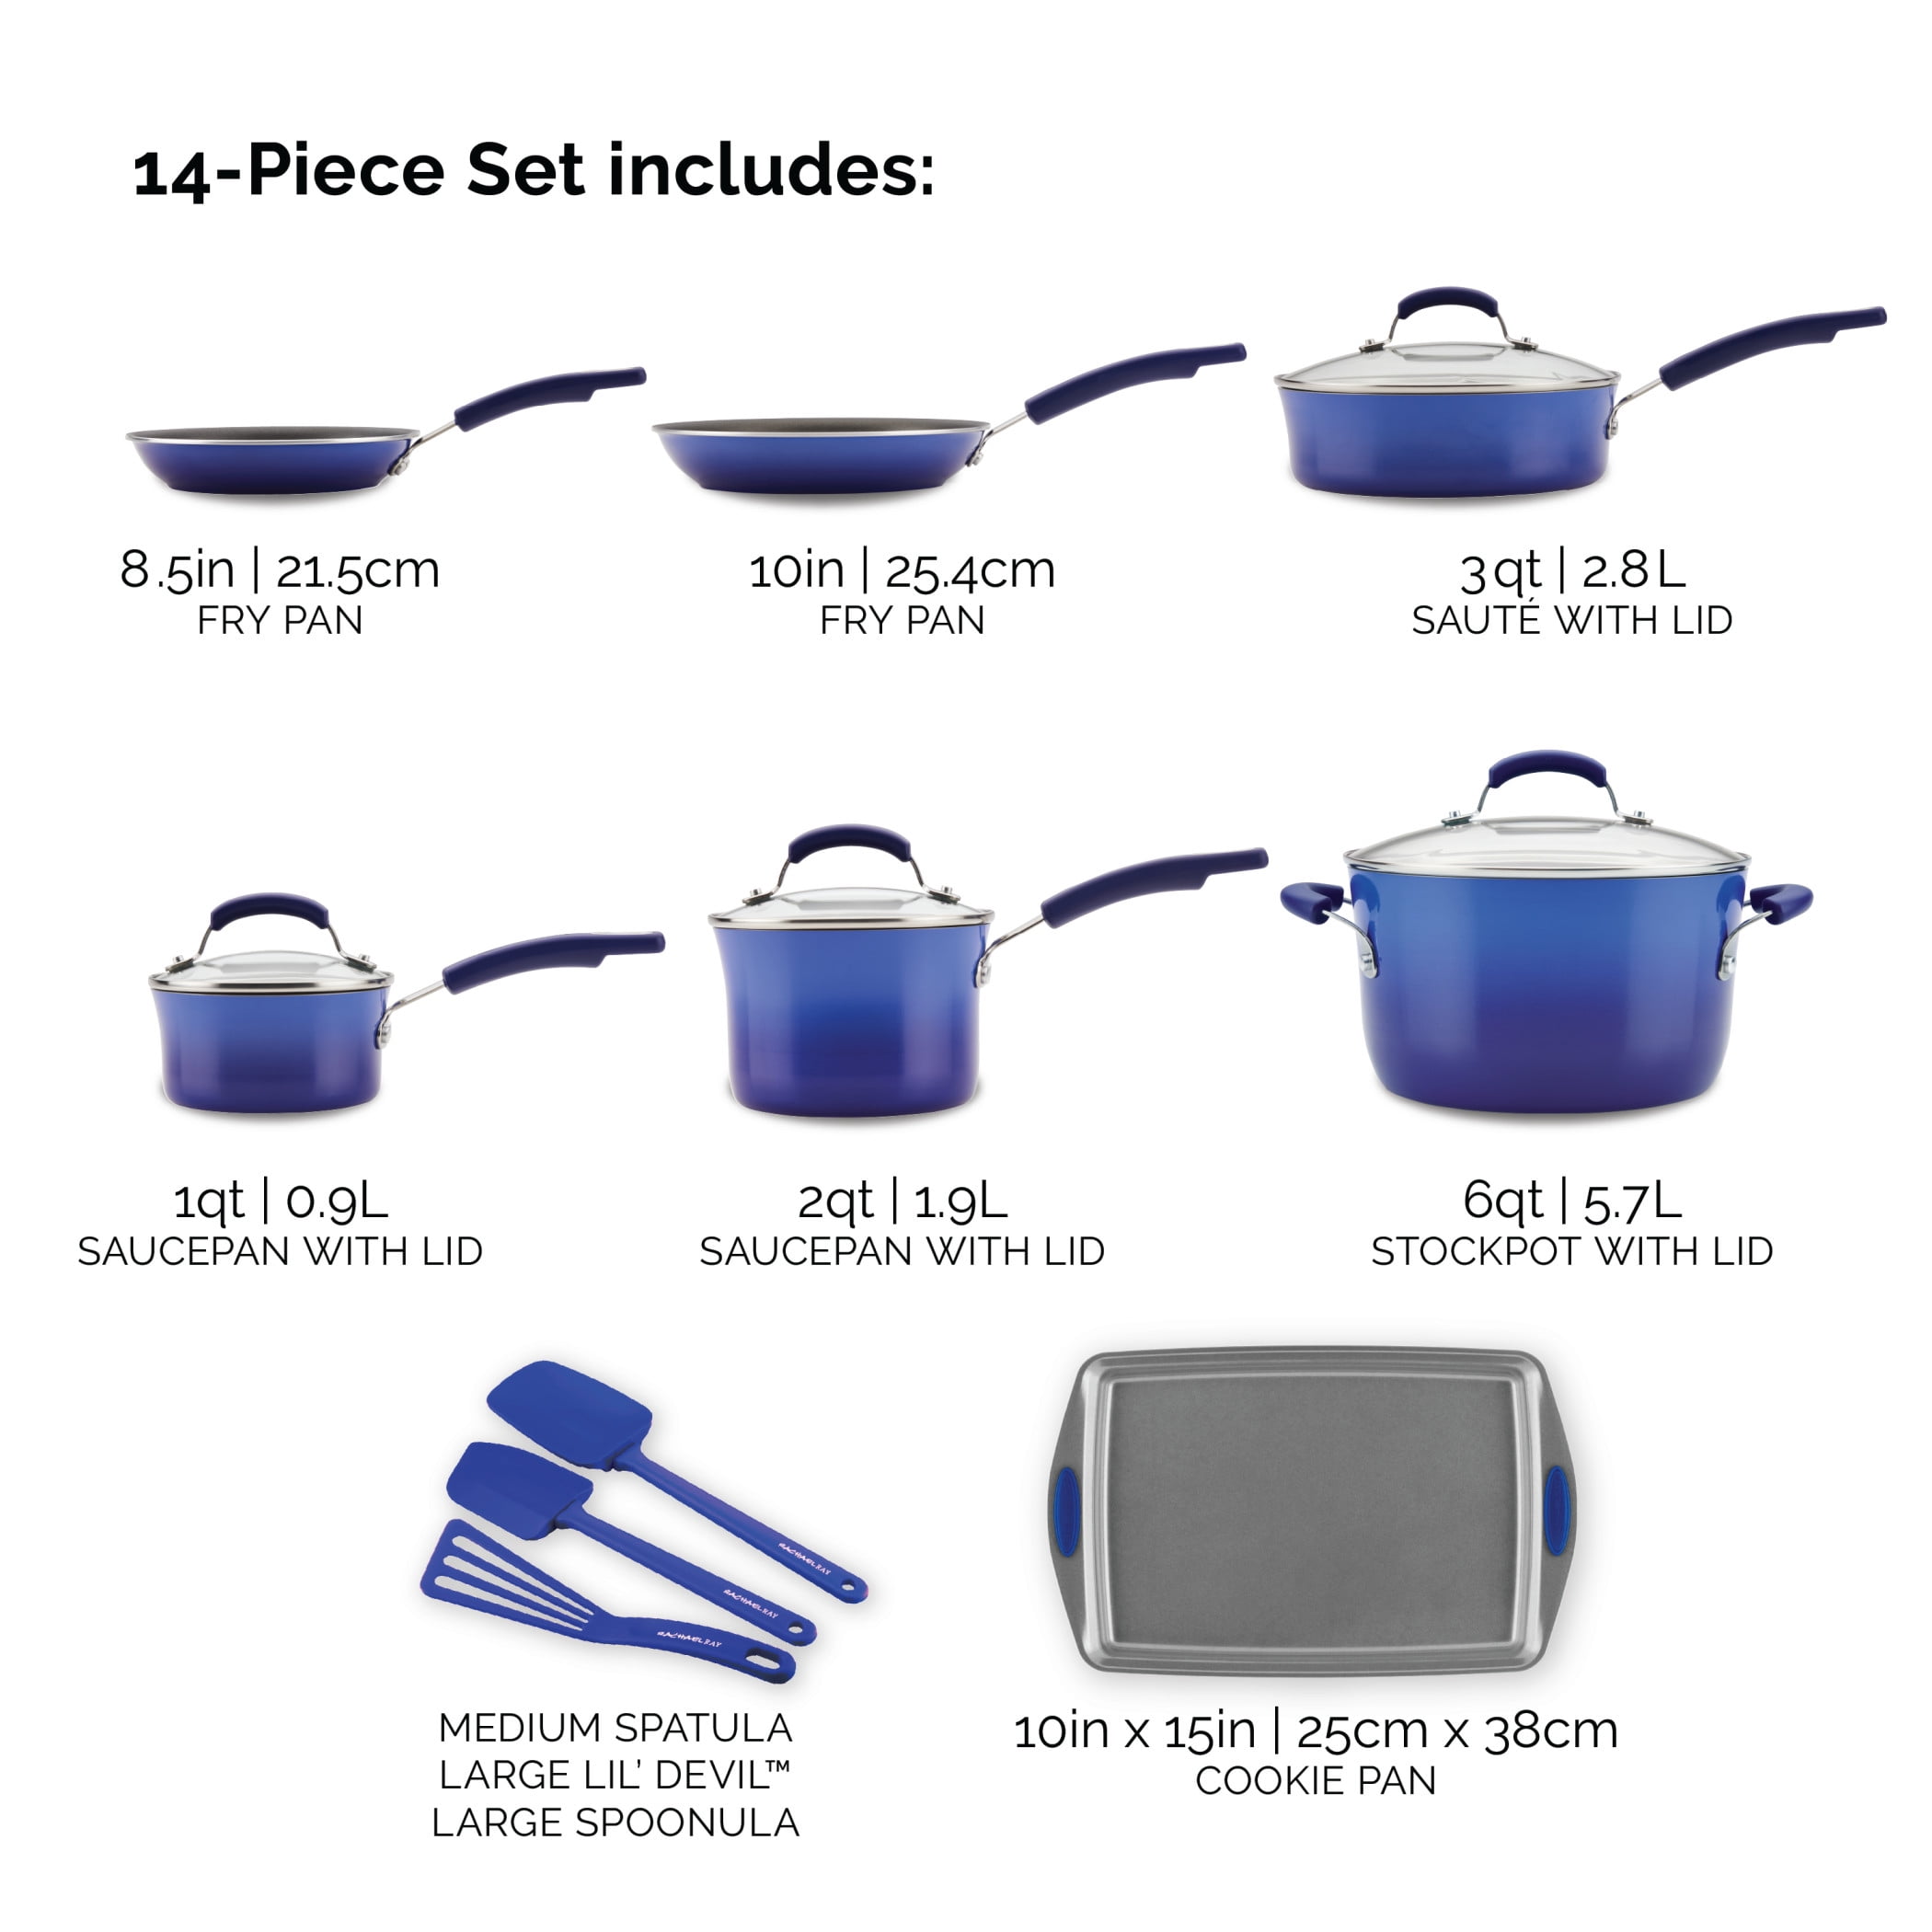 Rachael Ray 14-Pieces Nonstick Pots and Pans Set, Cookware Set, Purple  Gradient 